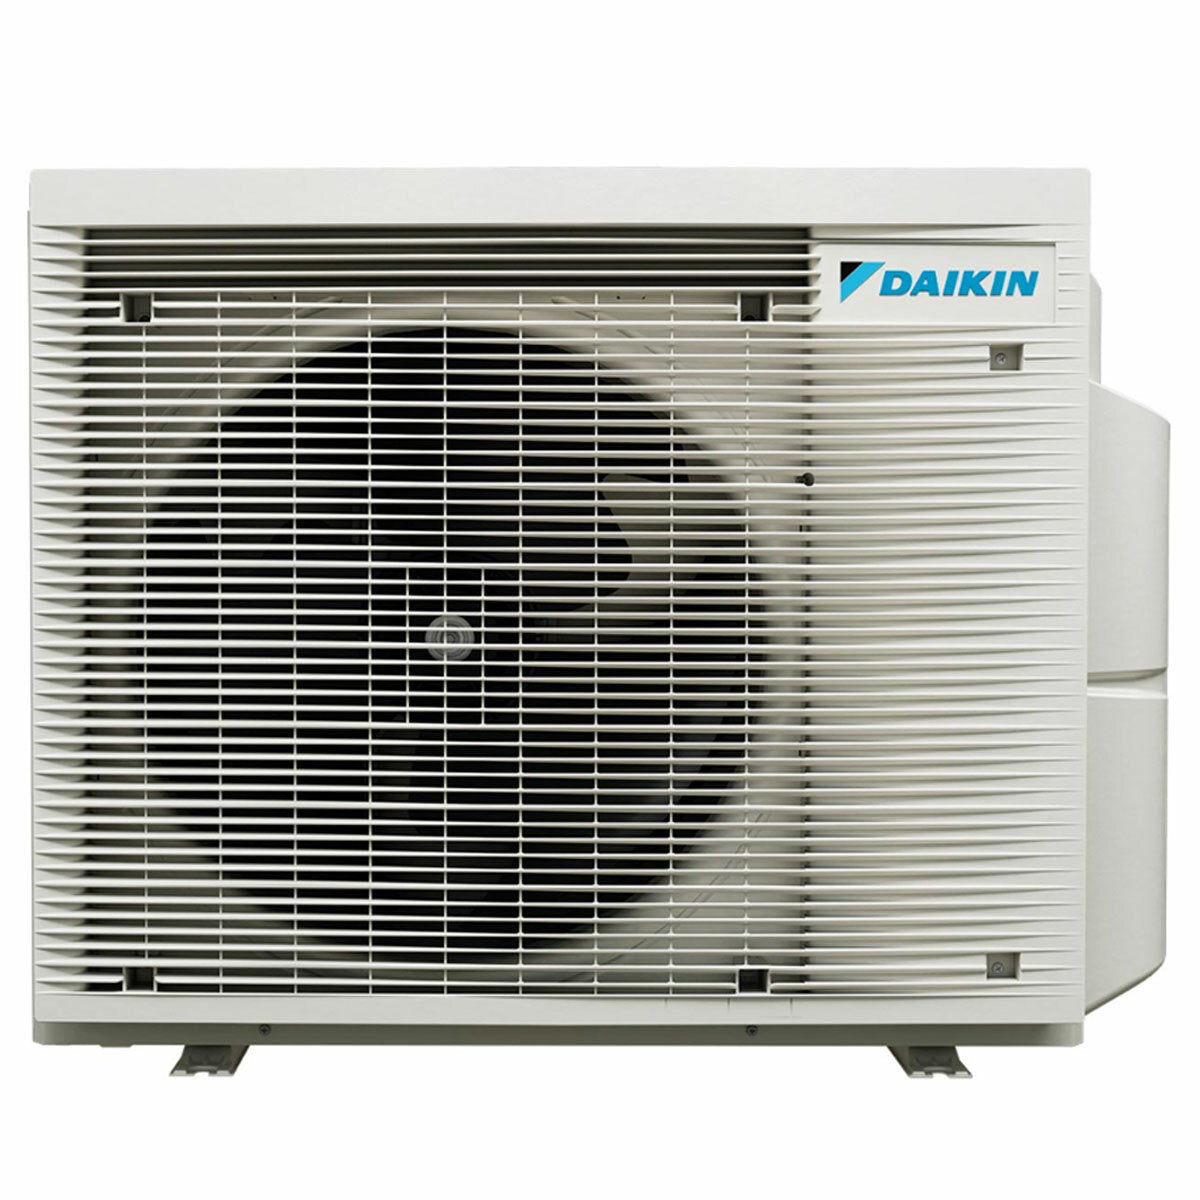 Daikin Stylish White Trial Split-Klimaanlage 7000+9000+18000 BTU Inverter A++ WLAN-Außeneinheit 6,8 kW